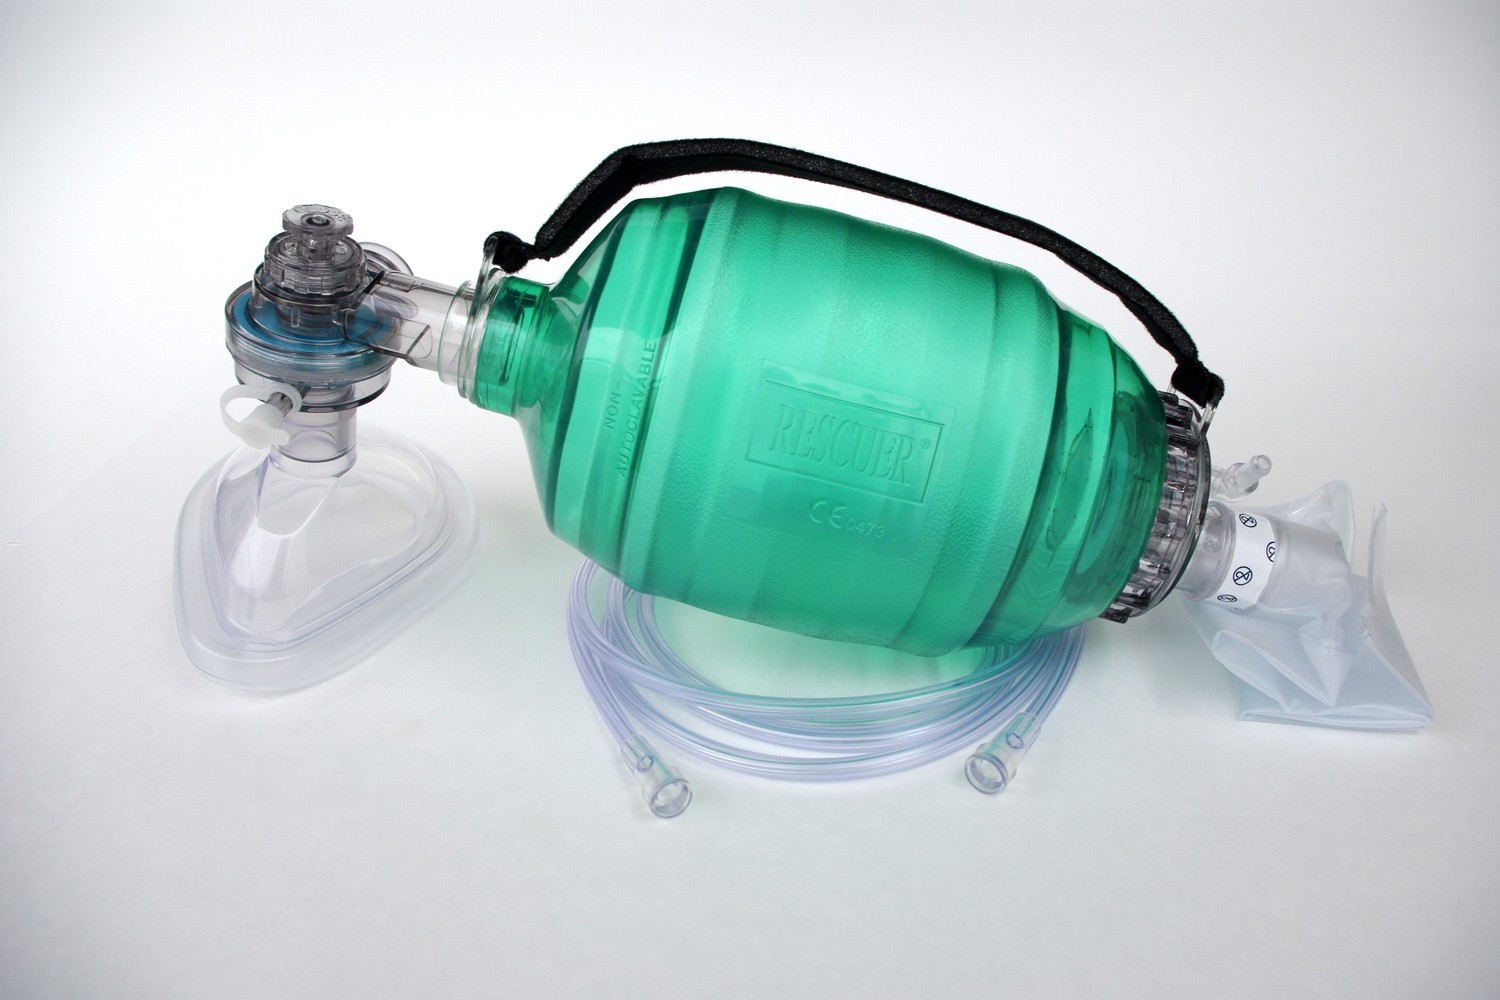 Resuscitator ADULT Mask (30kg/66 lbs+), Oxygen Reservoir System & Tubing w/ pop-off Bacterial/Viral Filter